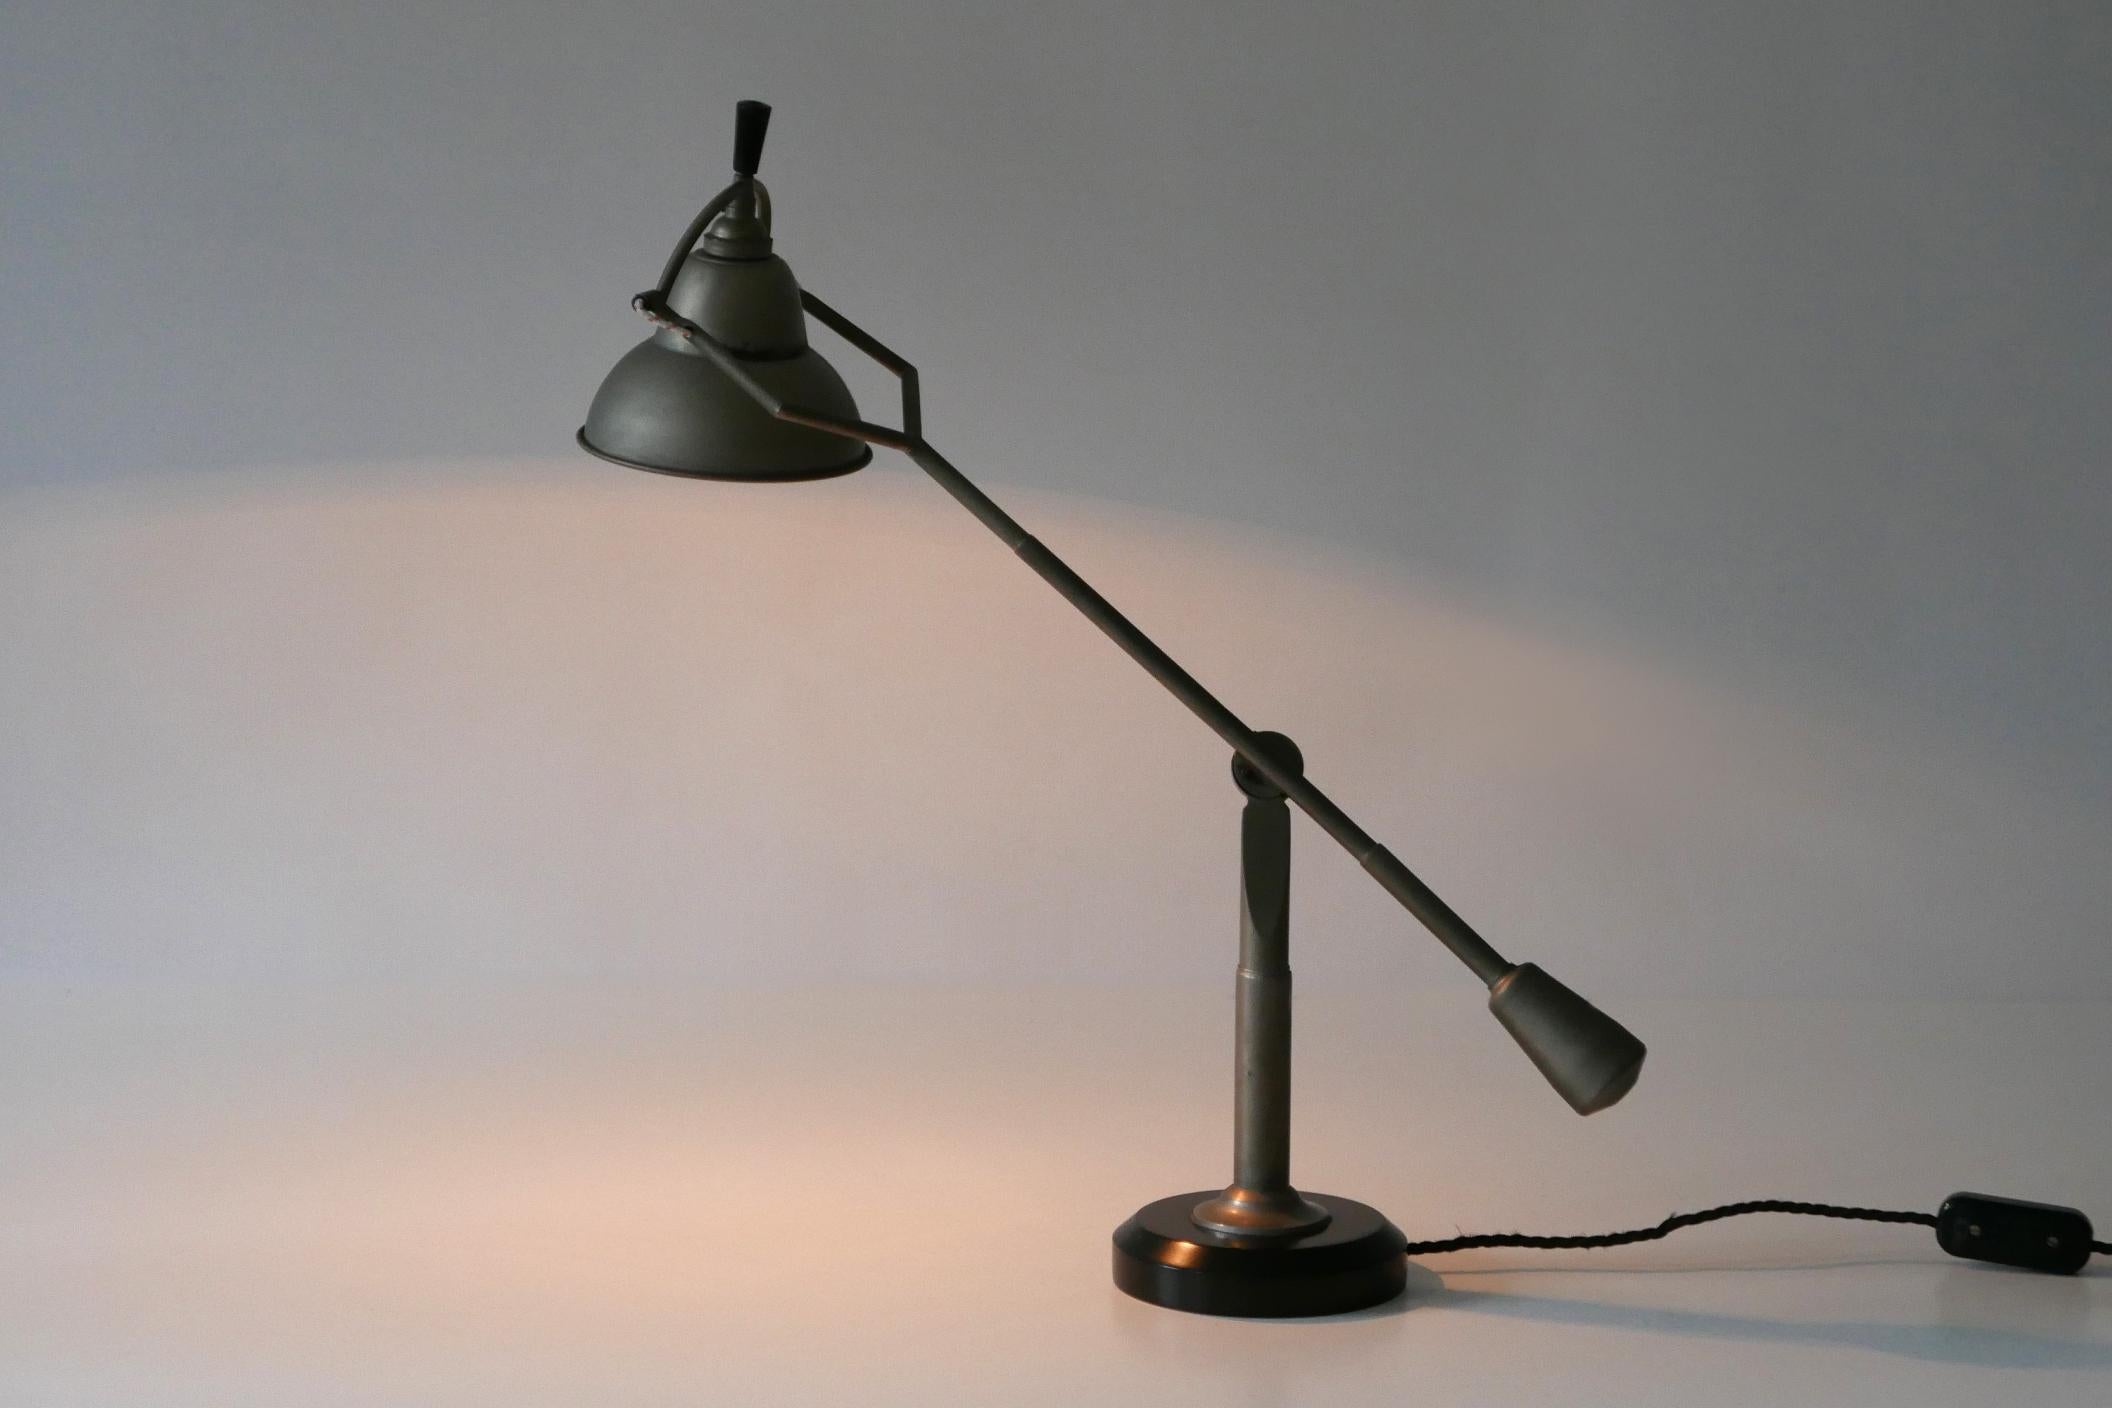 Iconique lampe de table ou de bureau Art Déco à contrepoids. Designed by Édouard-Wilfred Buquet, 1927, France. Cet exemple doit avoir été produit dans les années 1960-1970 à Munich, en Allemagne. Travail de qualité. Label en métal sur la face